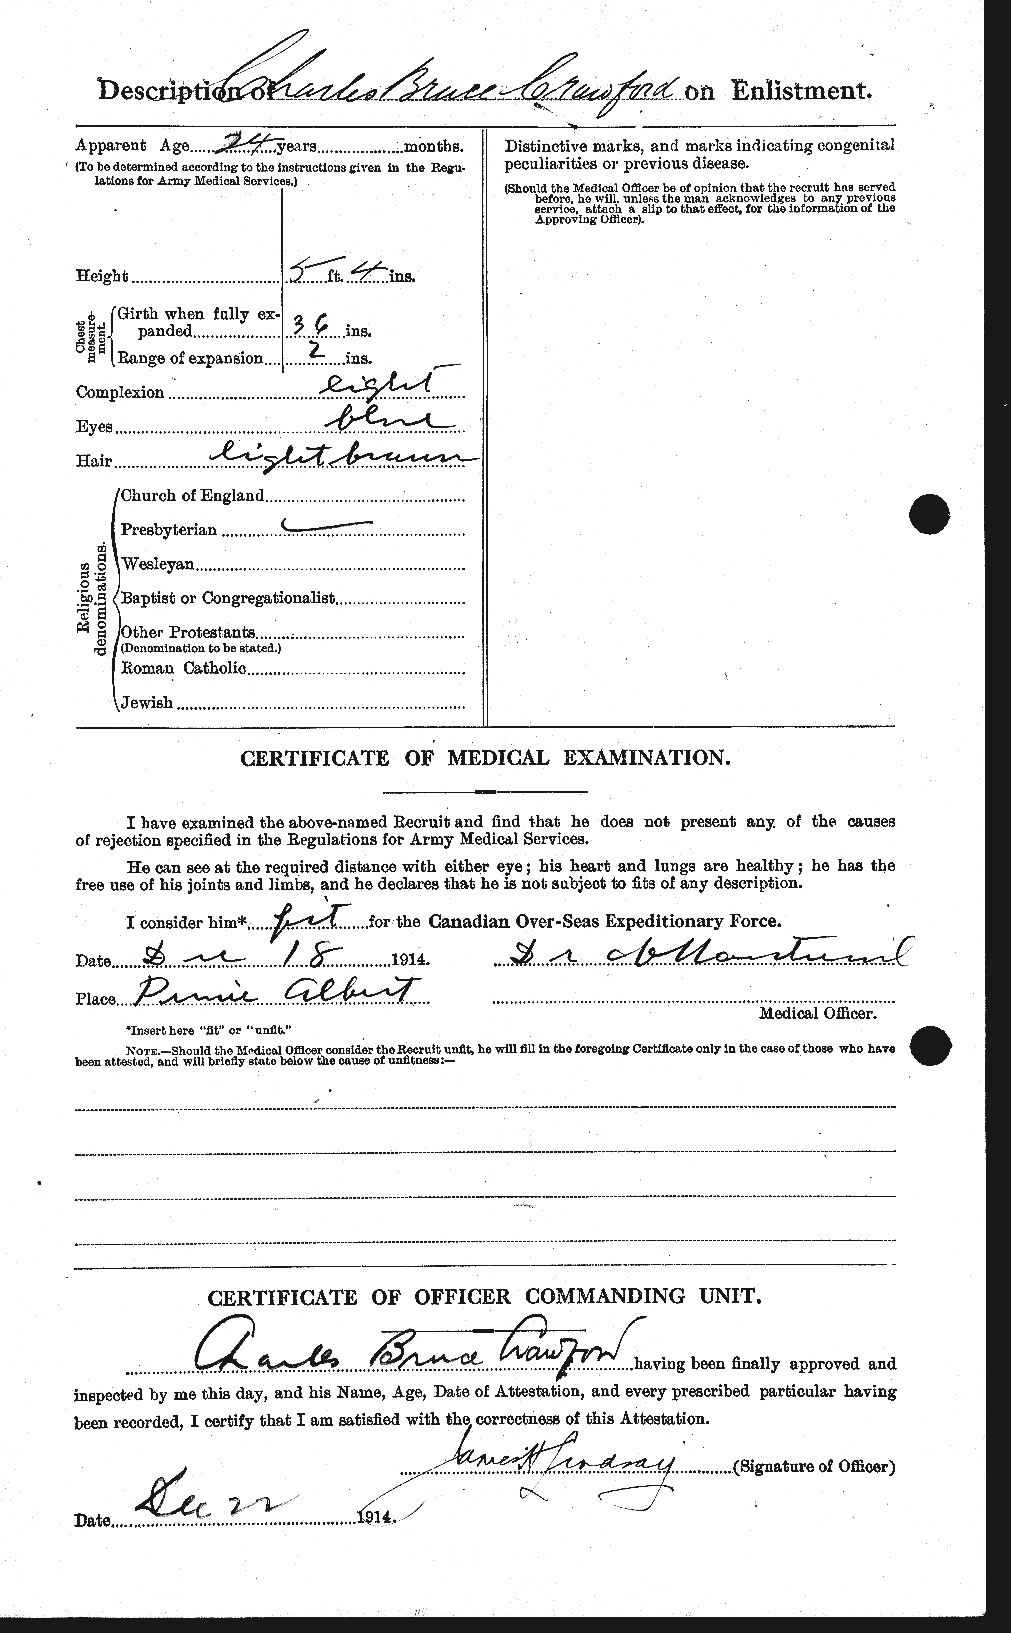 Dossiers du Personnel de la Première Guerre mondiale - CEC 060845b